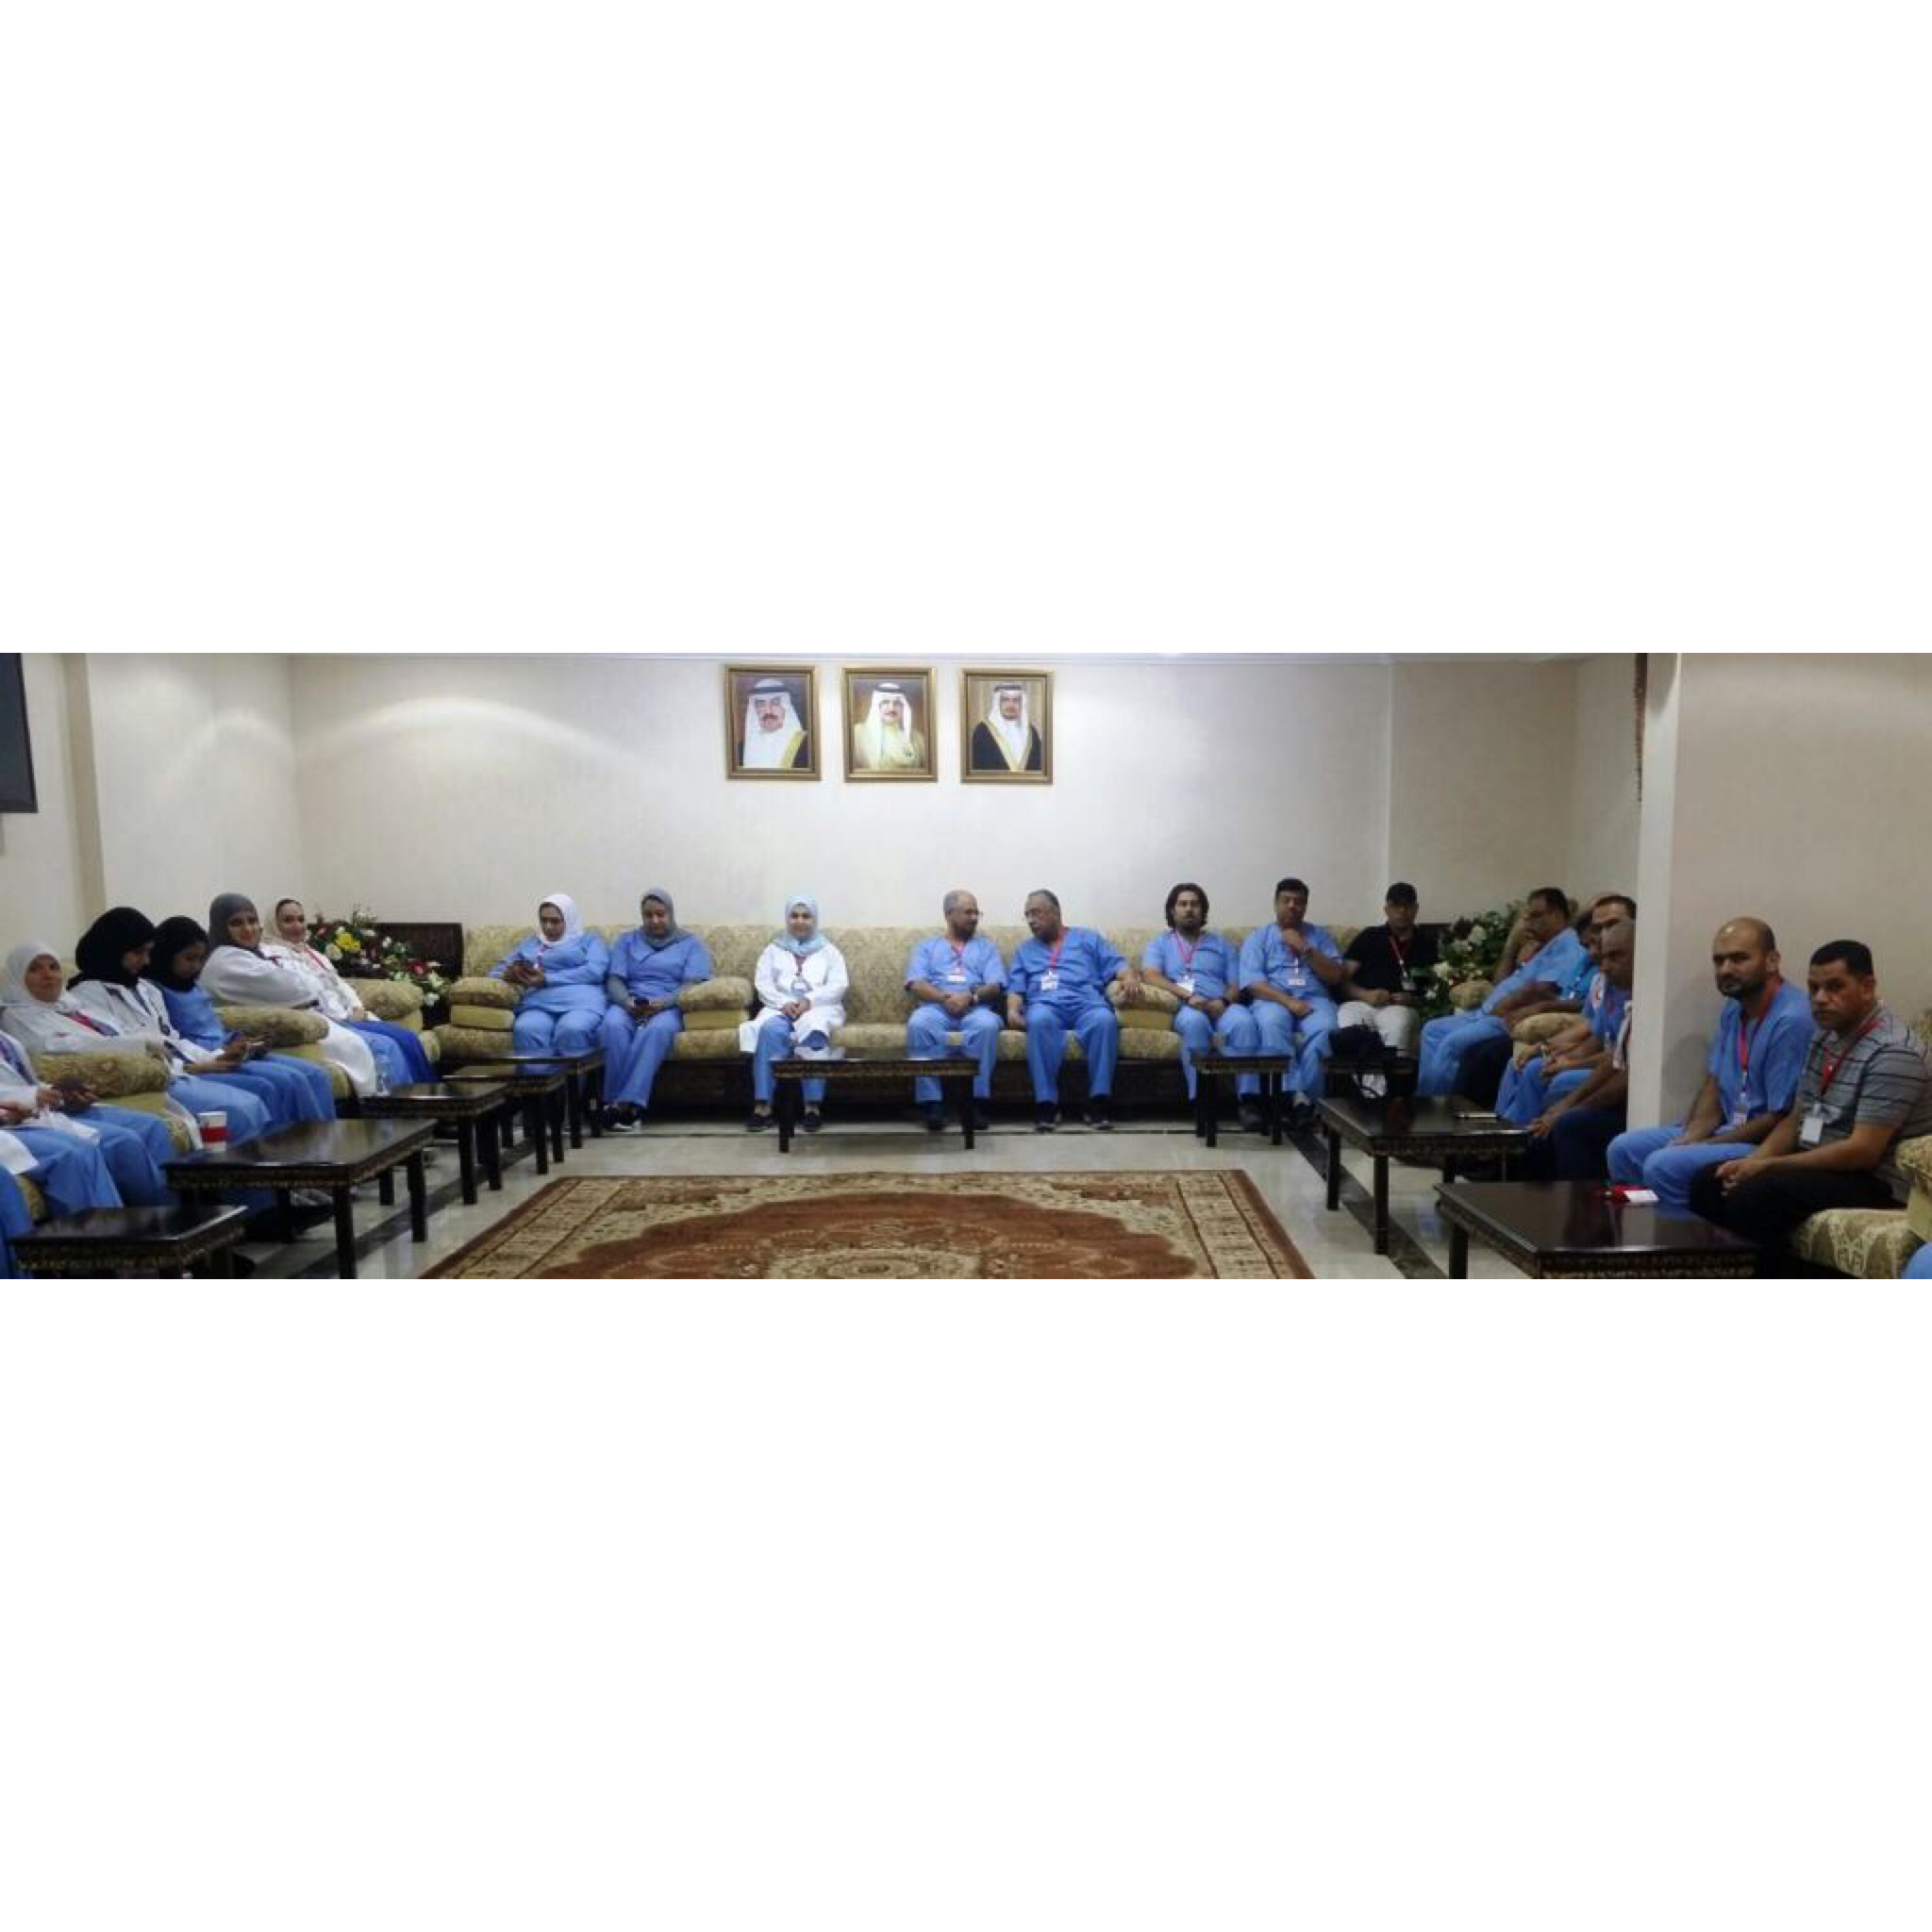 من الديار المقدسة أكد على تقديم أفضل الخدمات الصحية - د.عبيد يجتمع بأعضاء اللجنة الطبية استعداداً لافتتاح عيادة مكة المكرمة